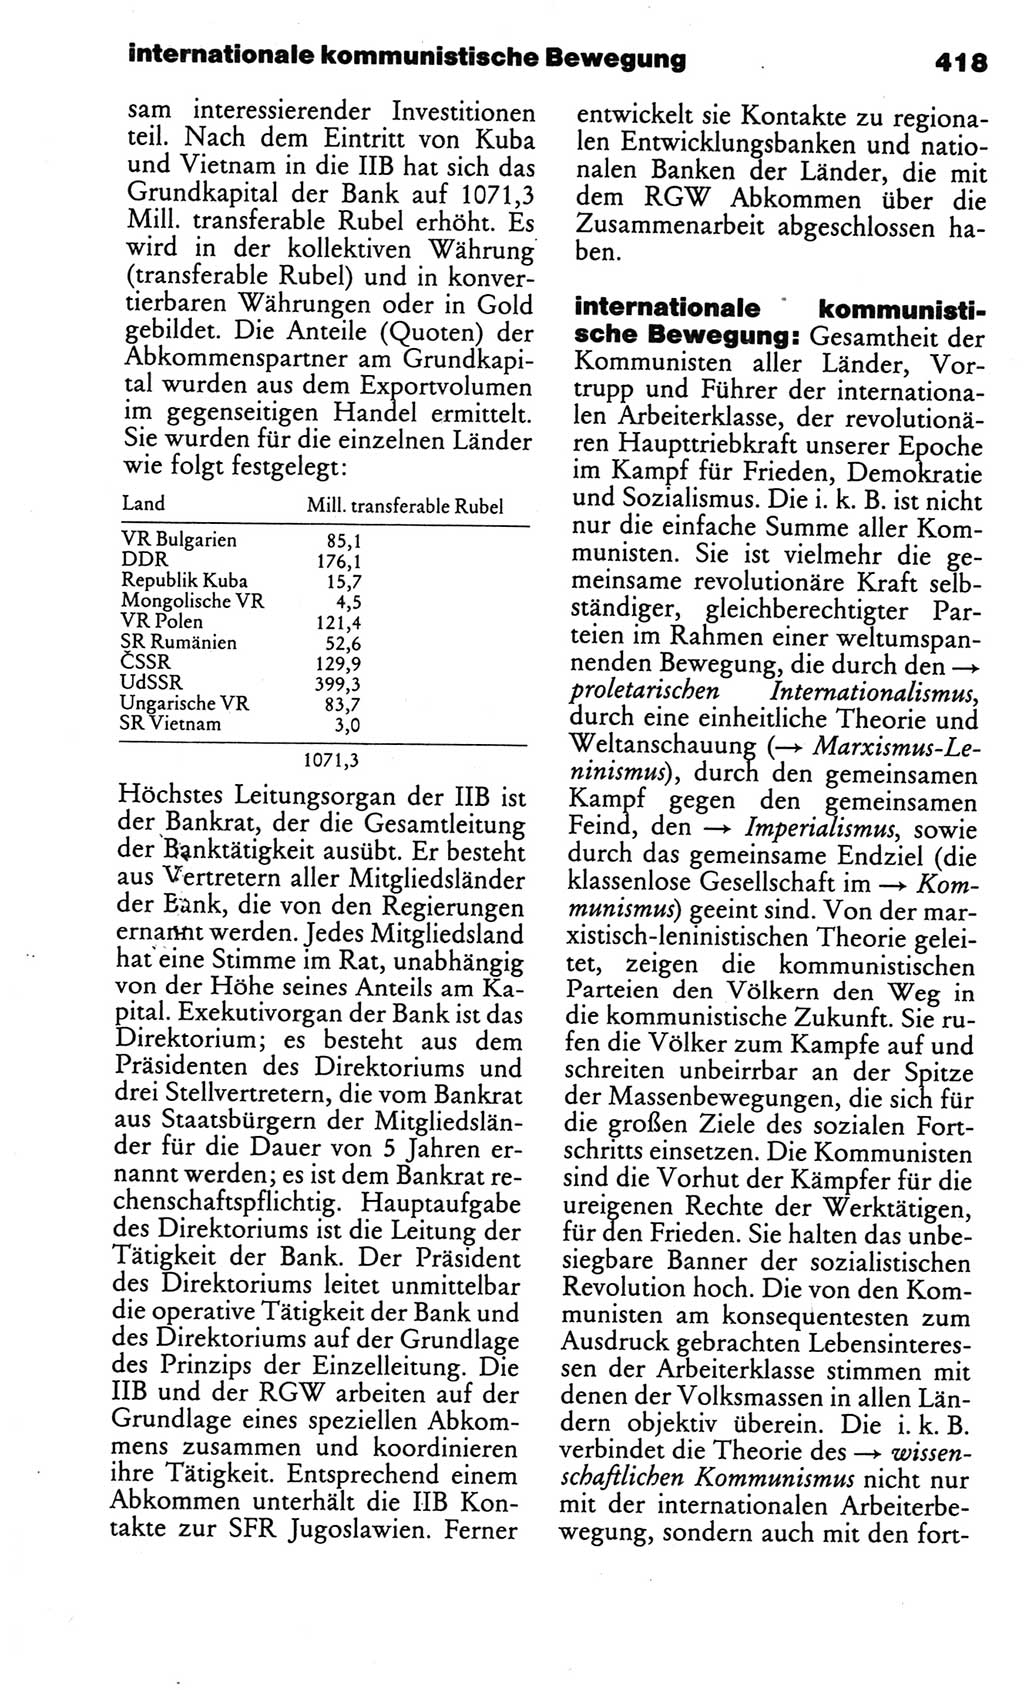 Kleines politisches Wörterbuch [Deutsche Demokratische Republik (DDR)] 1986, Seite 418 (Kl. pol. Wb. DDR 1986, S. 418)